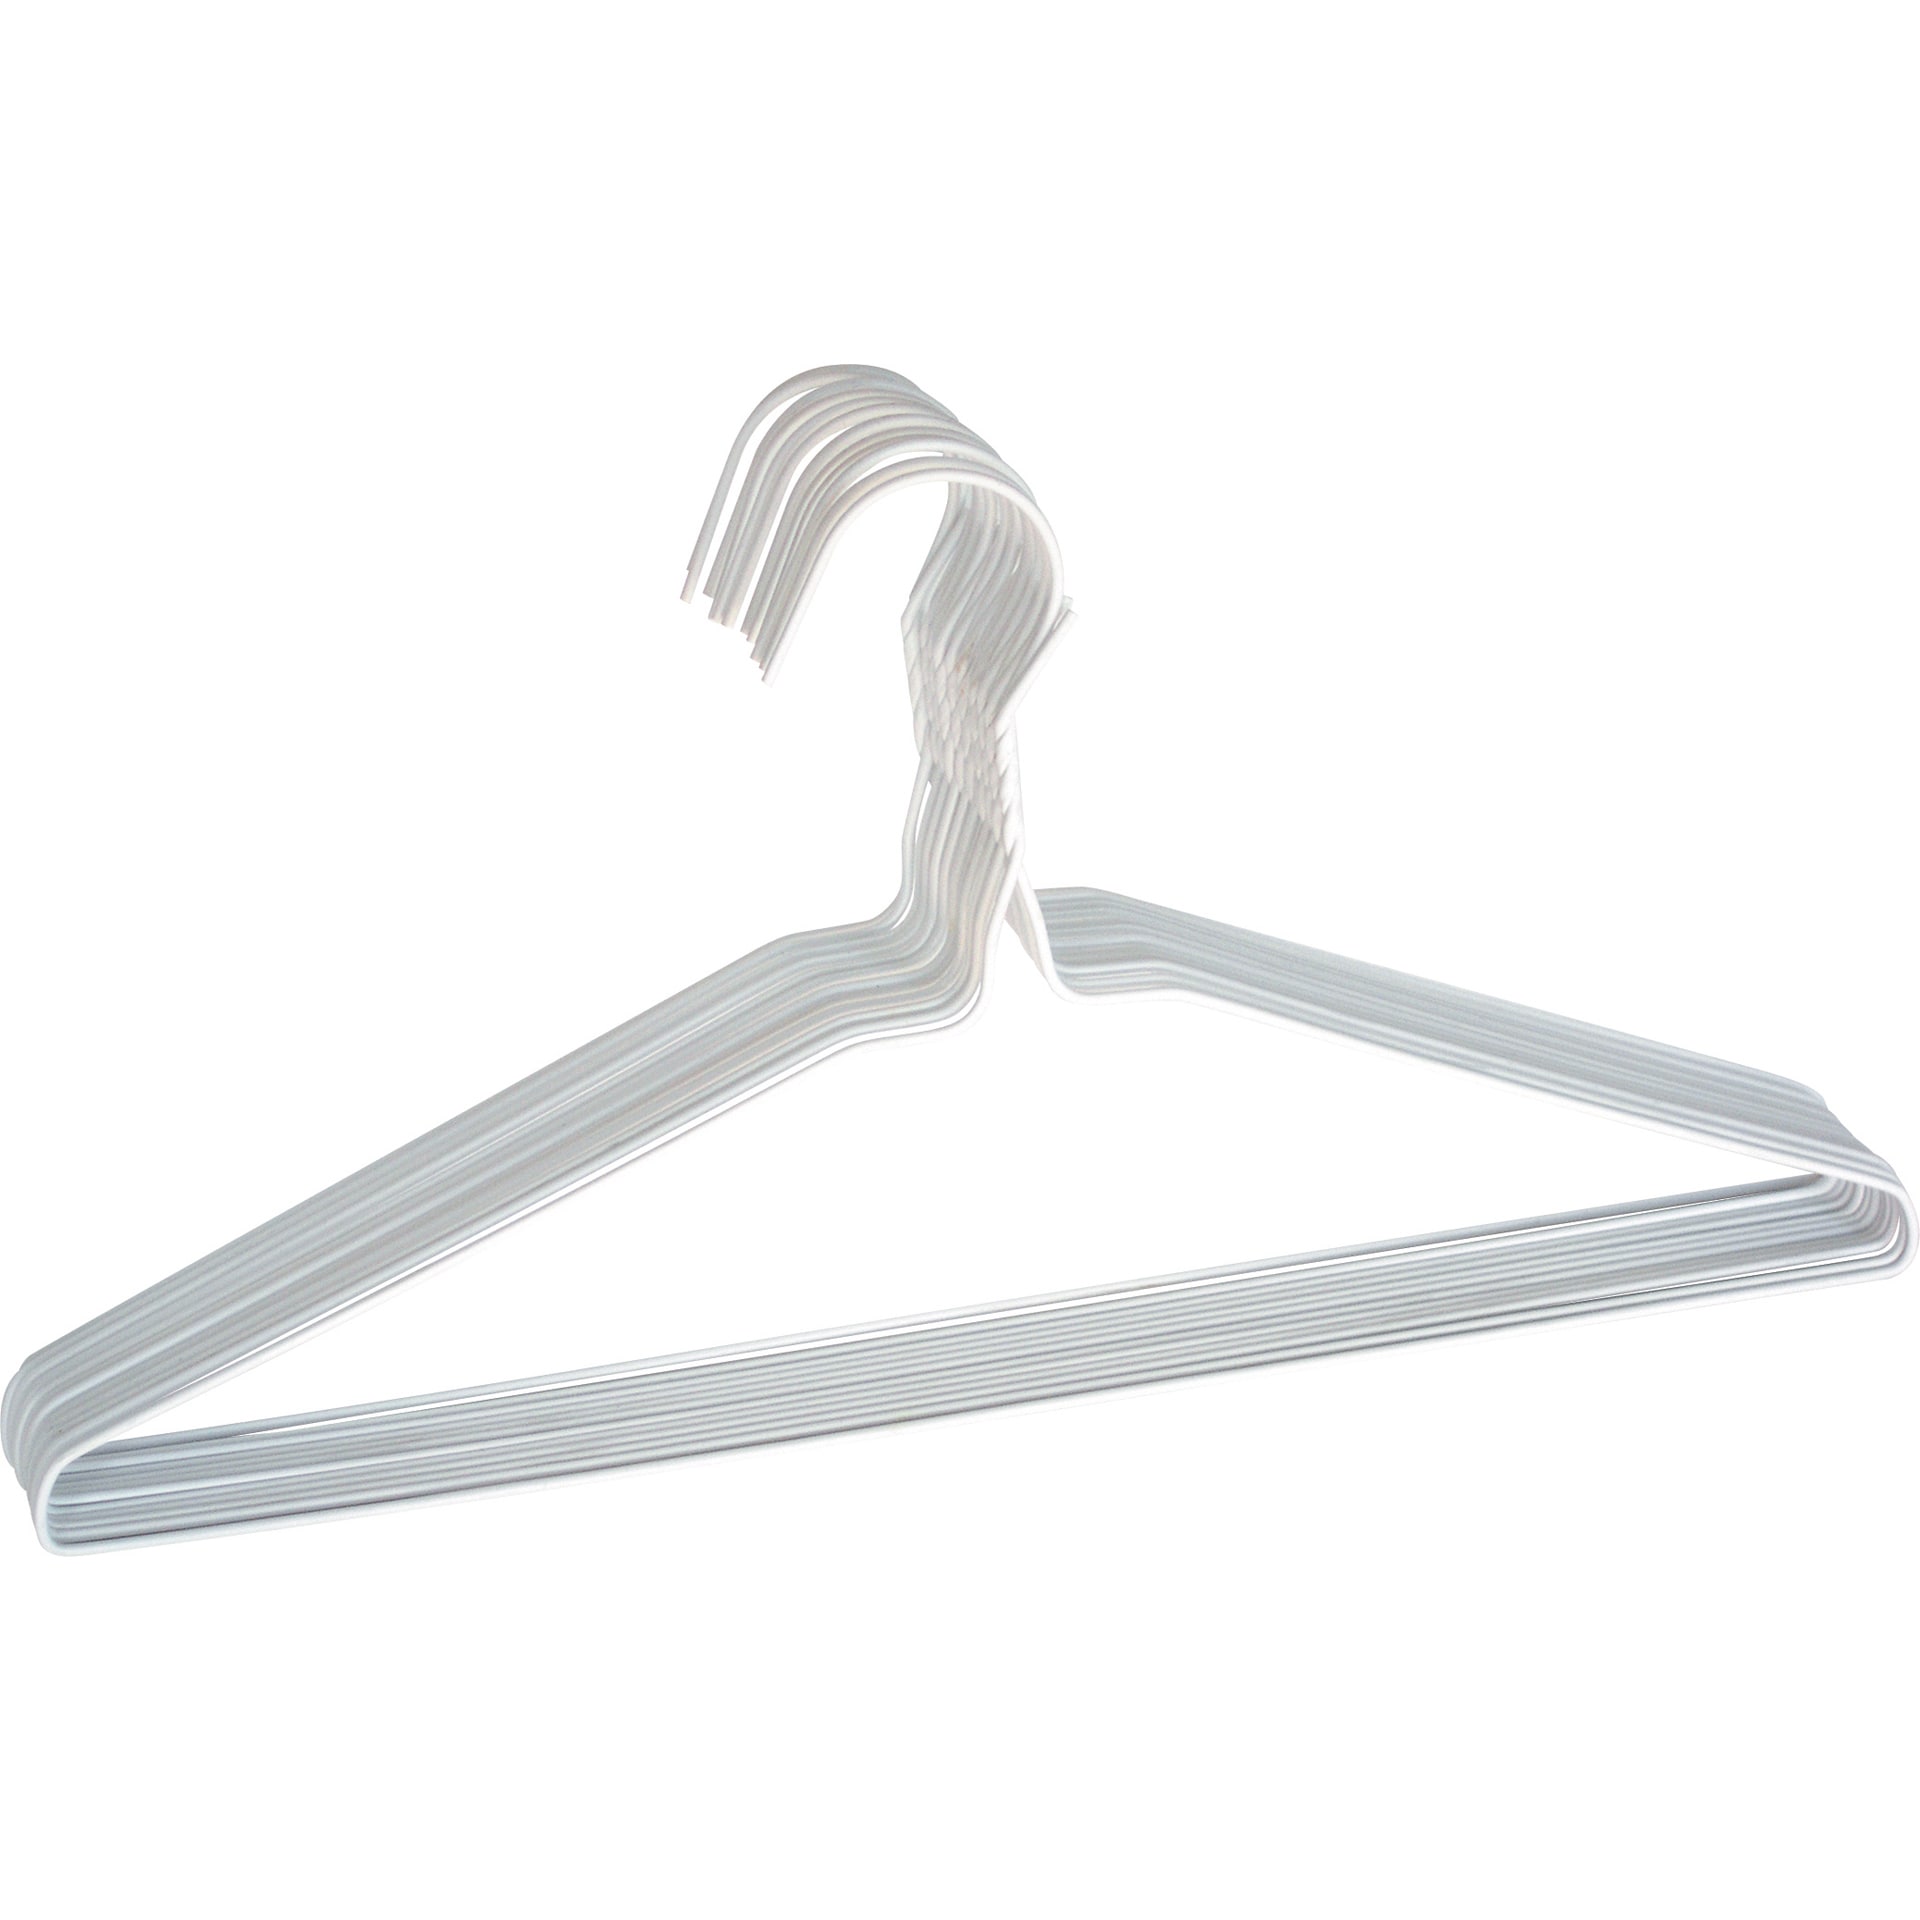 Merrick Hangers, Plastic - 24 hangers